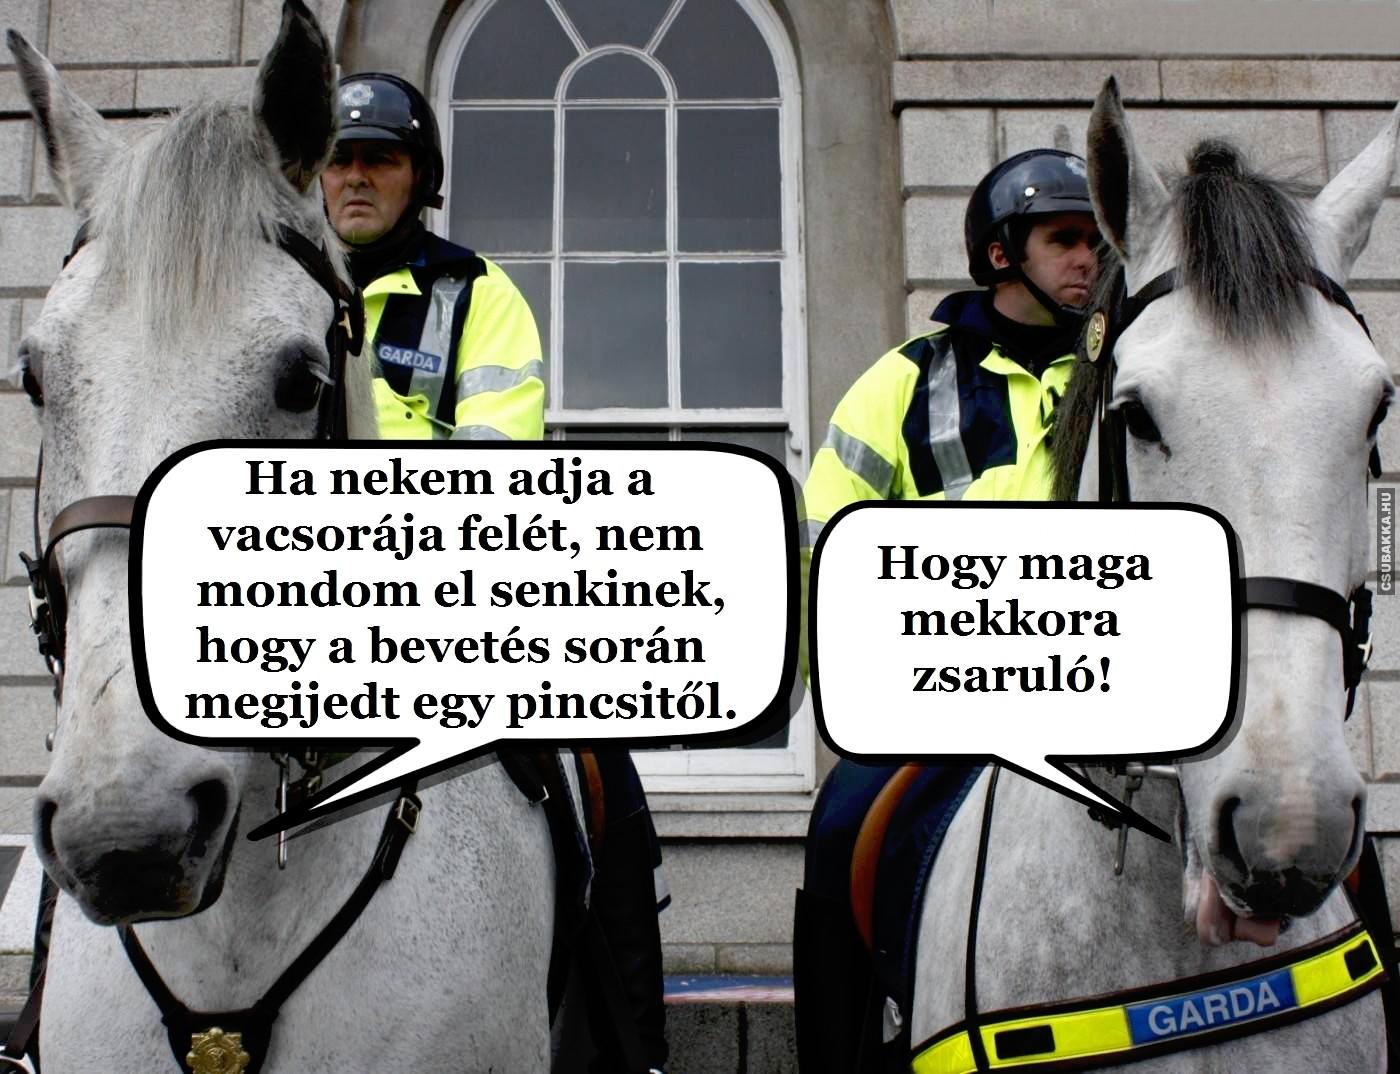 Rendőrlovak :) rendőr lovak